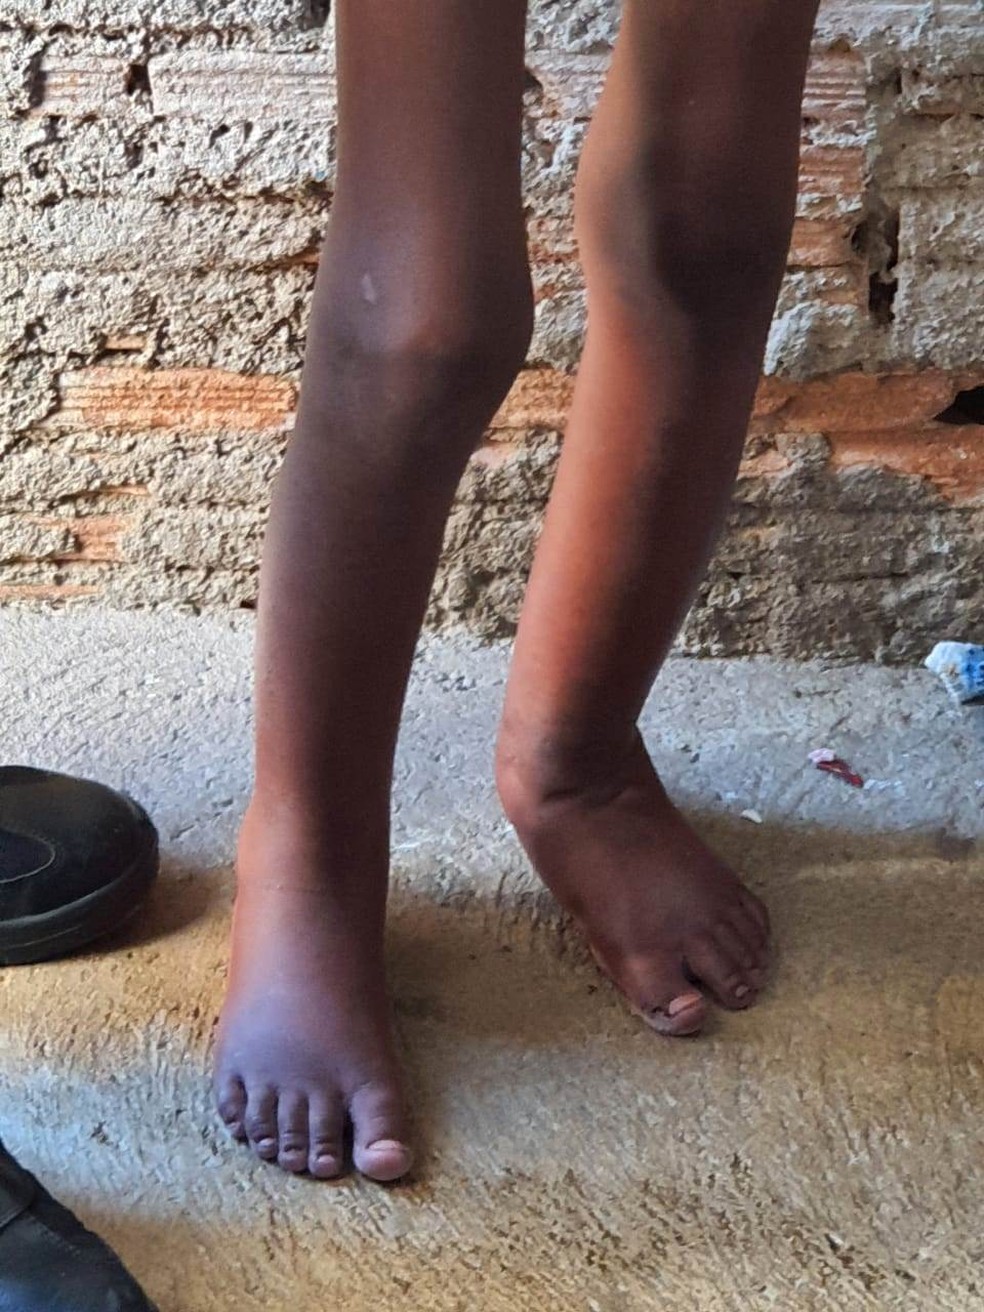 Criança foi resgatada após sofrer tortura em Campinas, diz PM — Foto: Polícia Militar